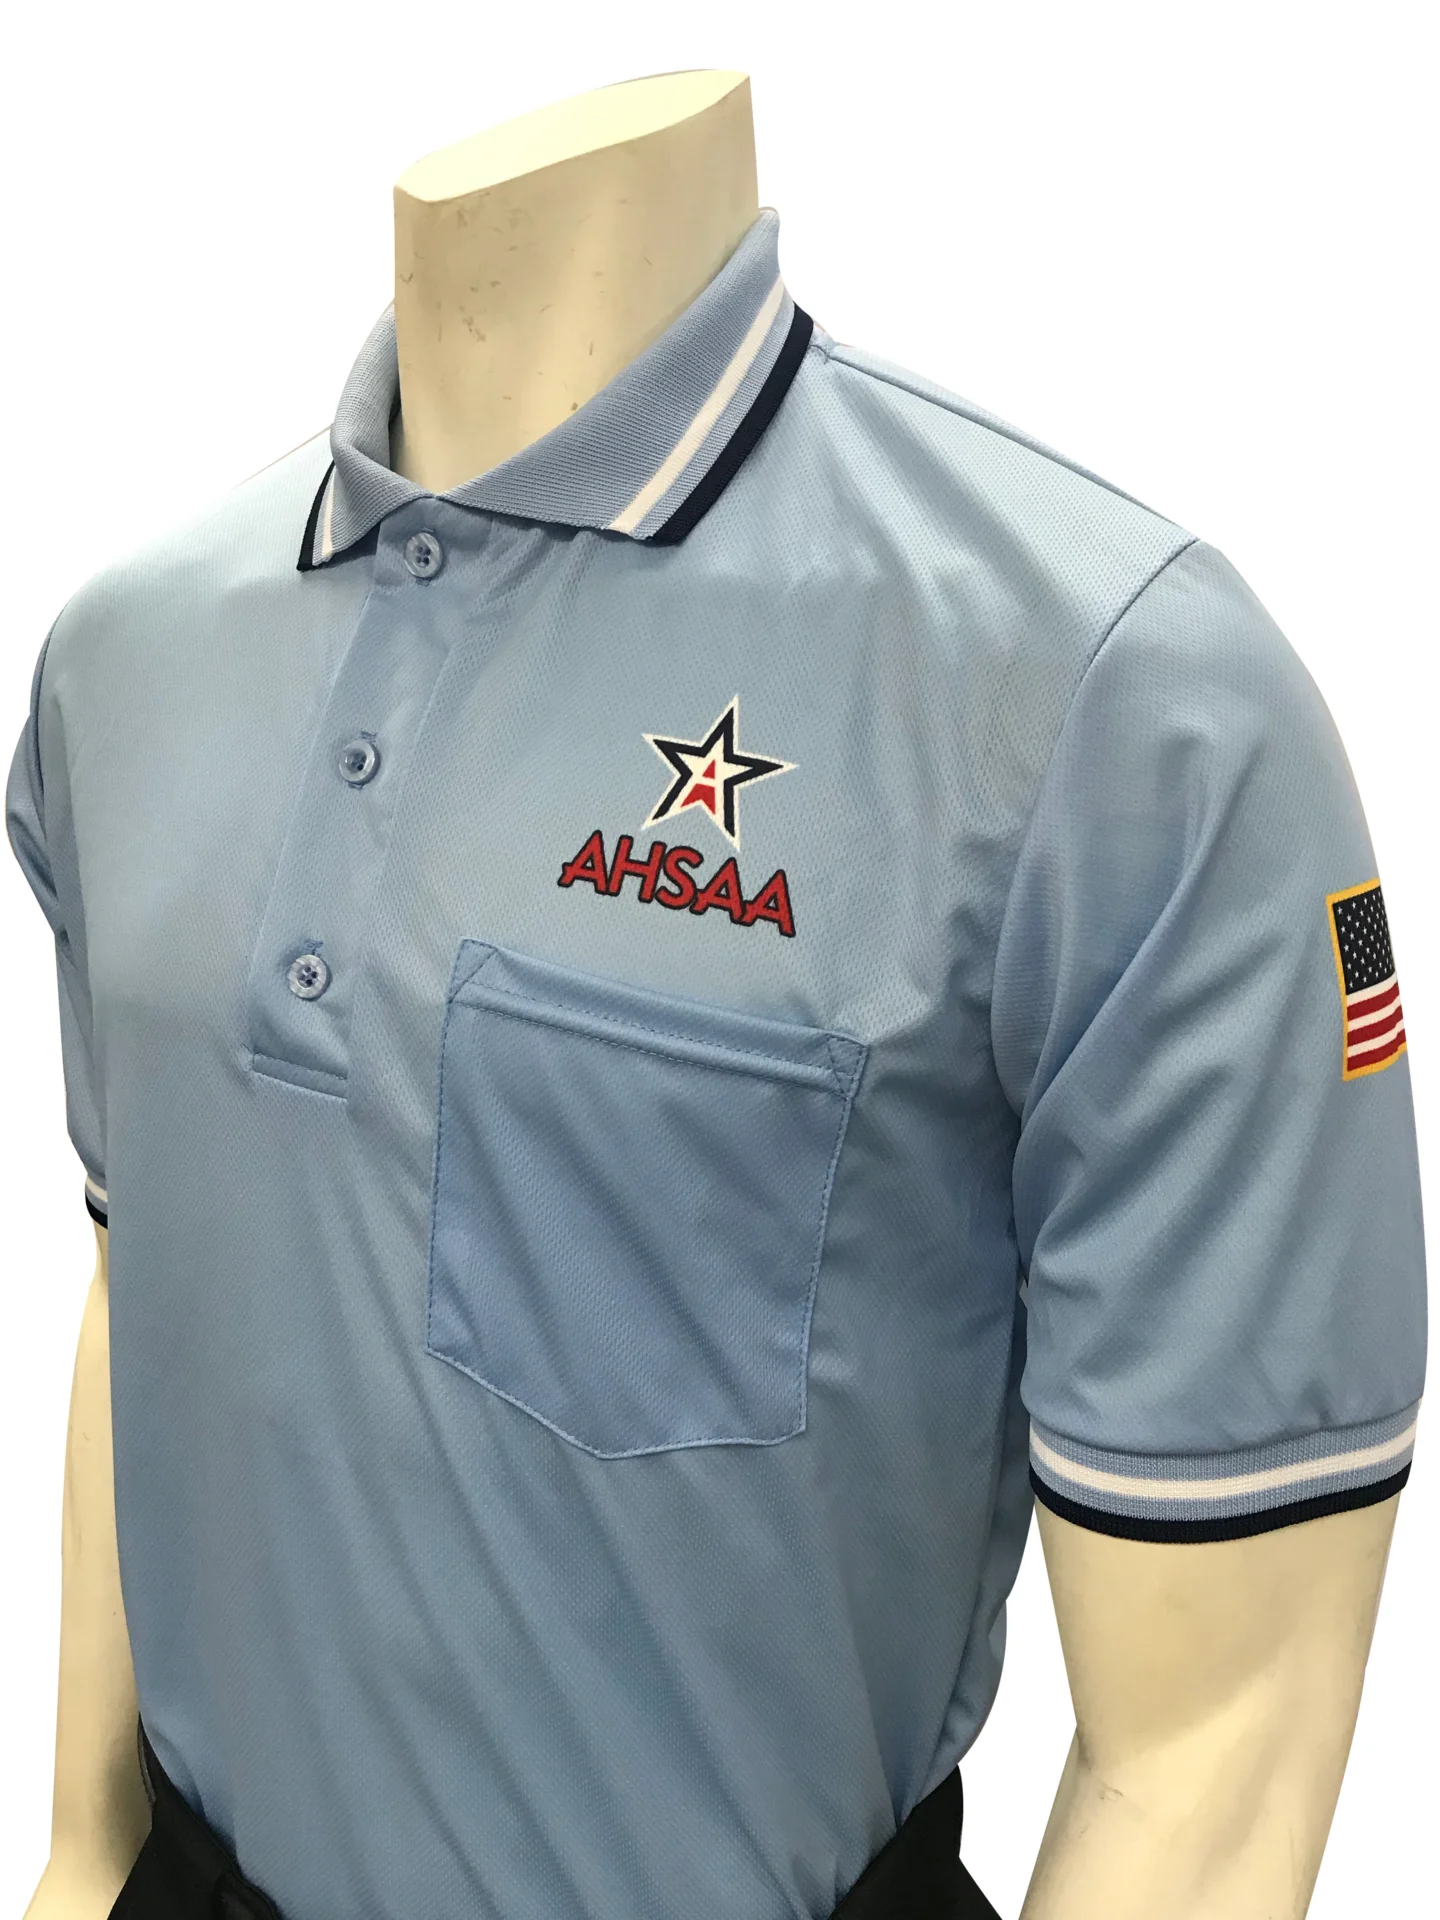 USA300 AL Ump Shirt New Logo Above Pocket Powder Blue